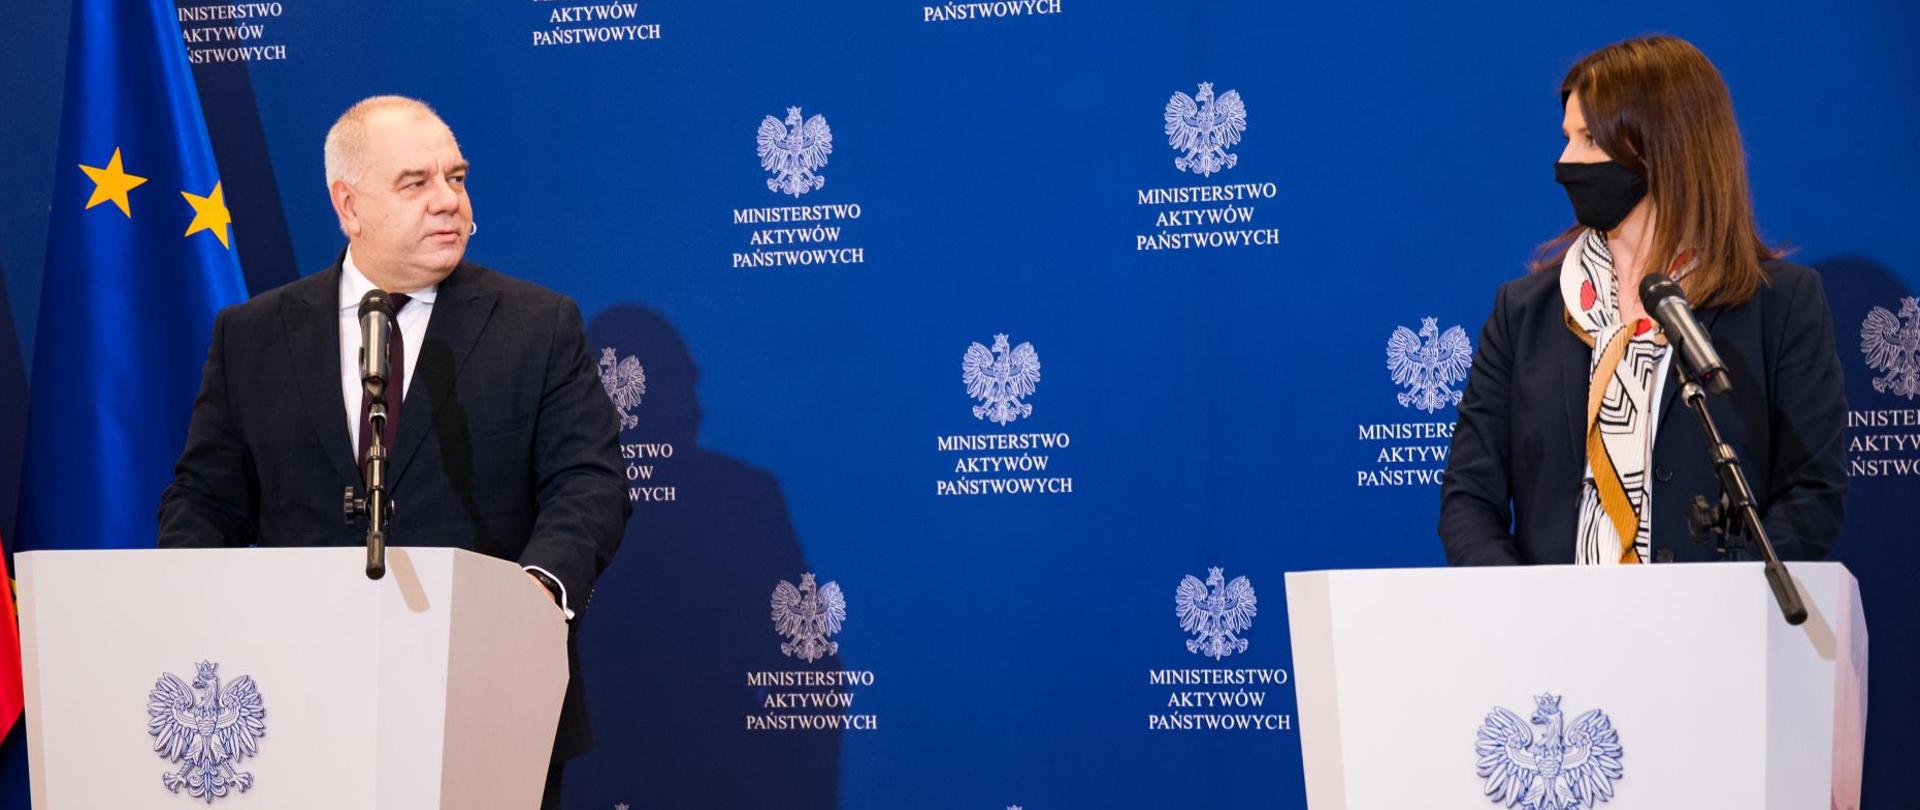 Wicepremier Jacek Sasin oraz Danuta Dmowska Andrzejuk podczas konferencji prasowej. W tle ścianka MAP i flaga Polski i UE.